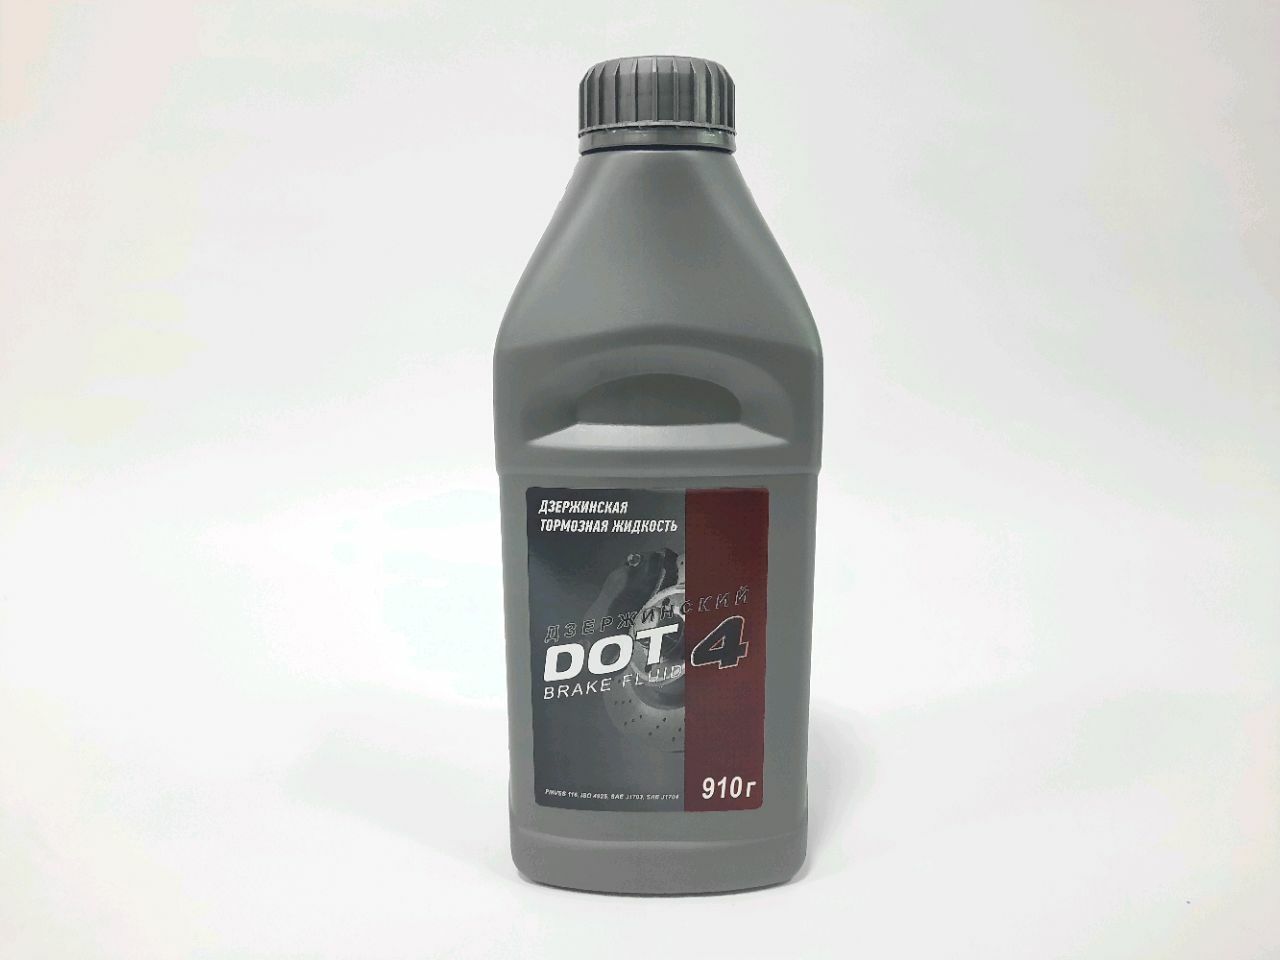 DOT-4 lichid de frână Dzerzhinsky 910 g.